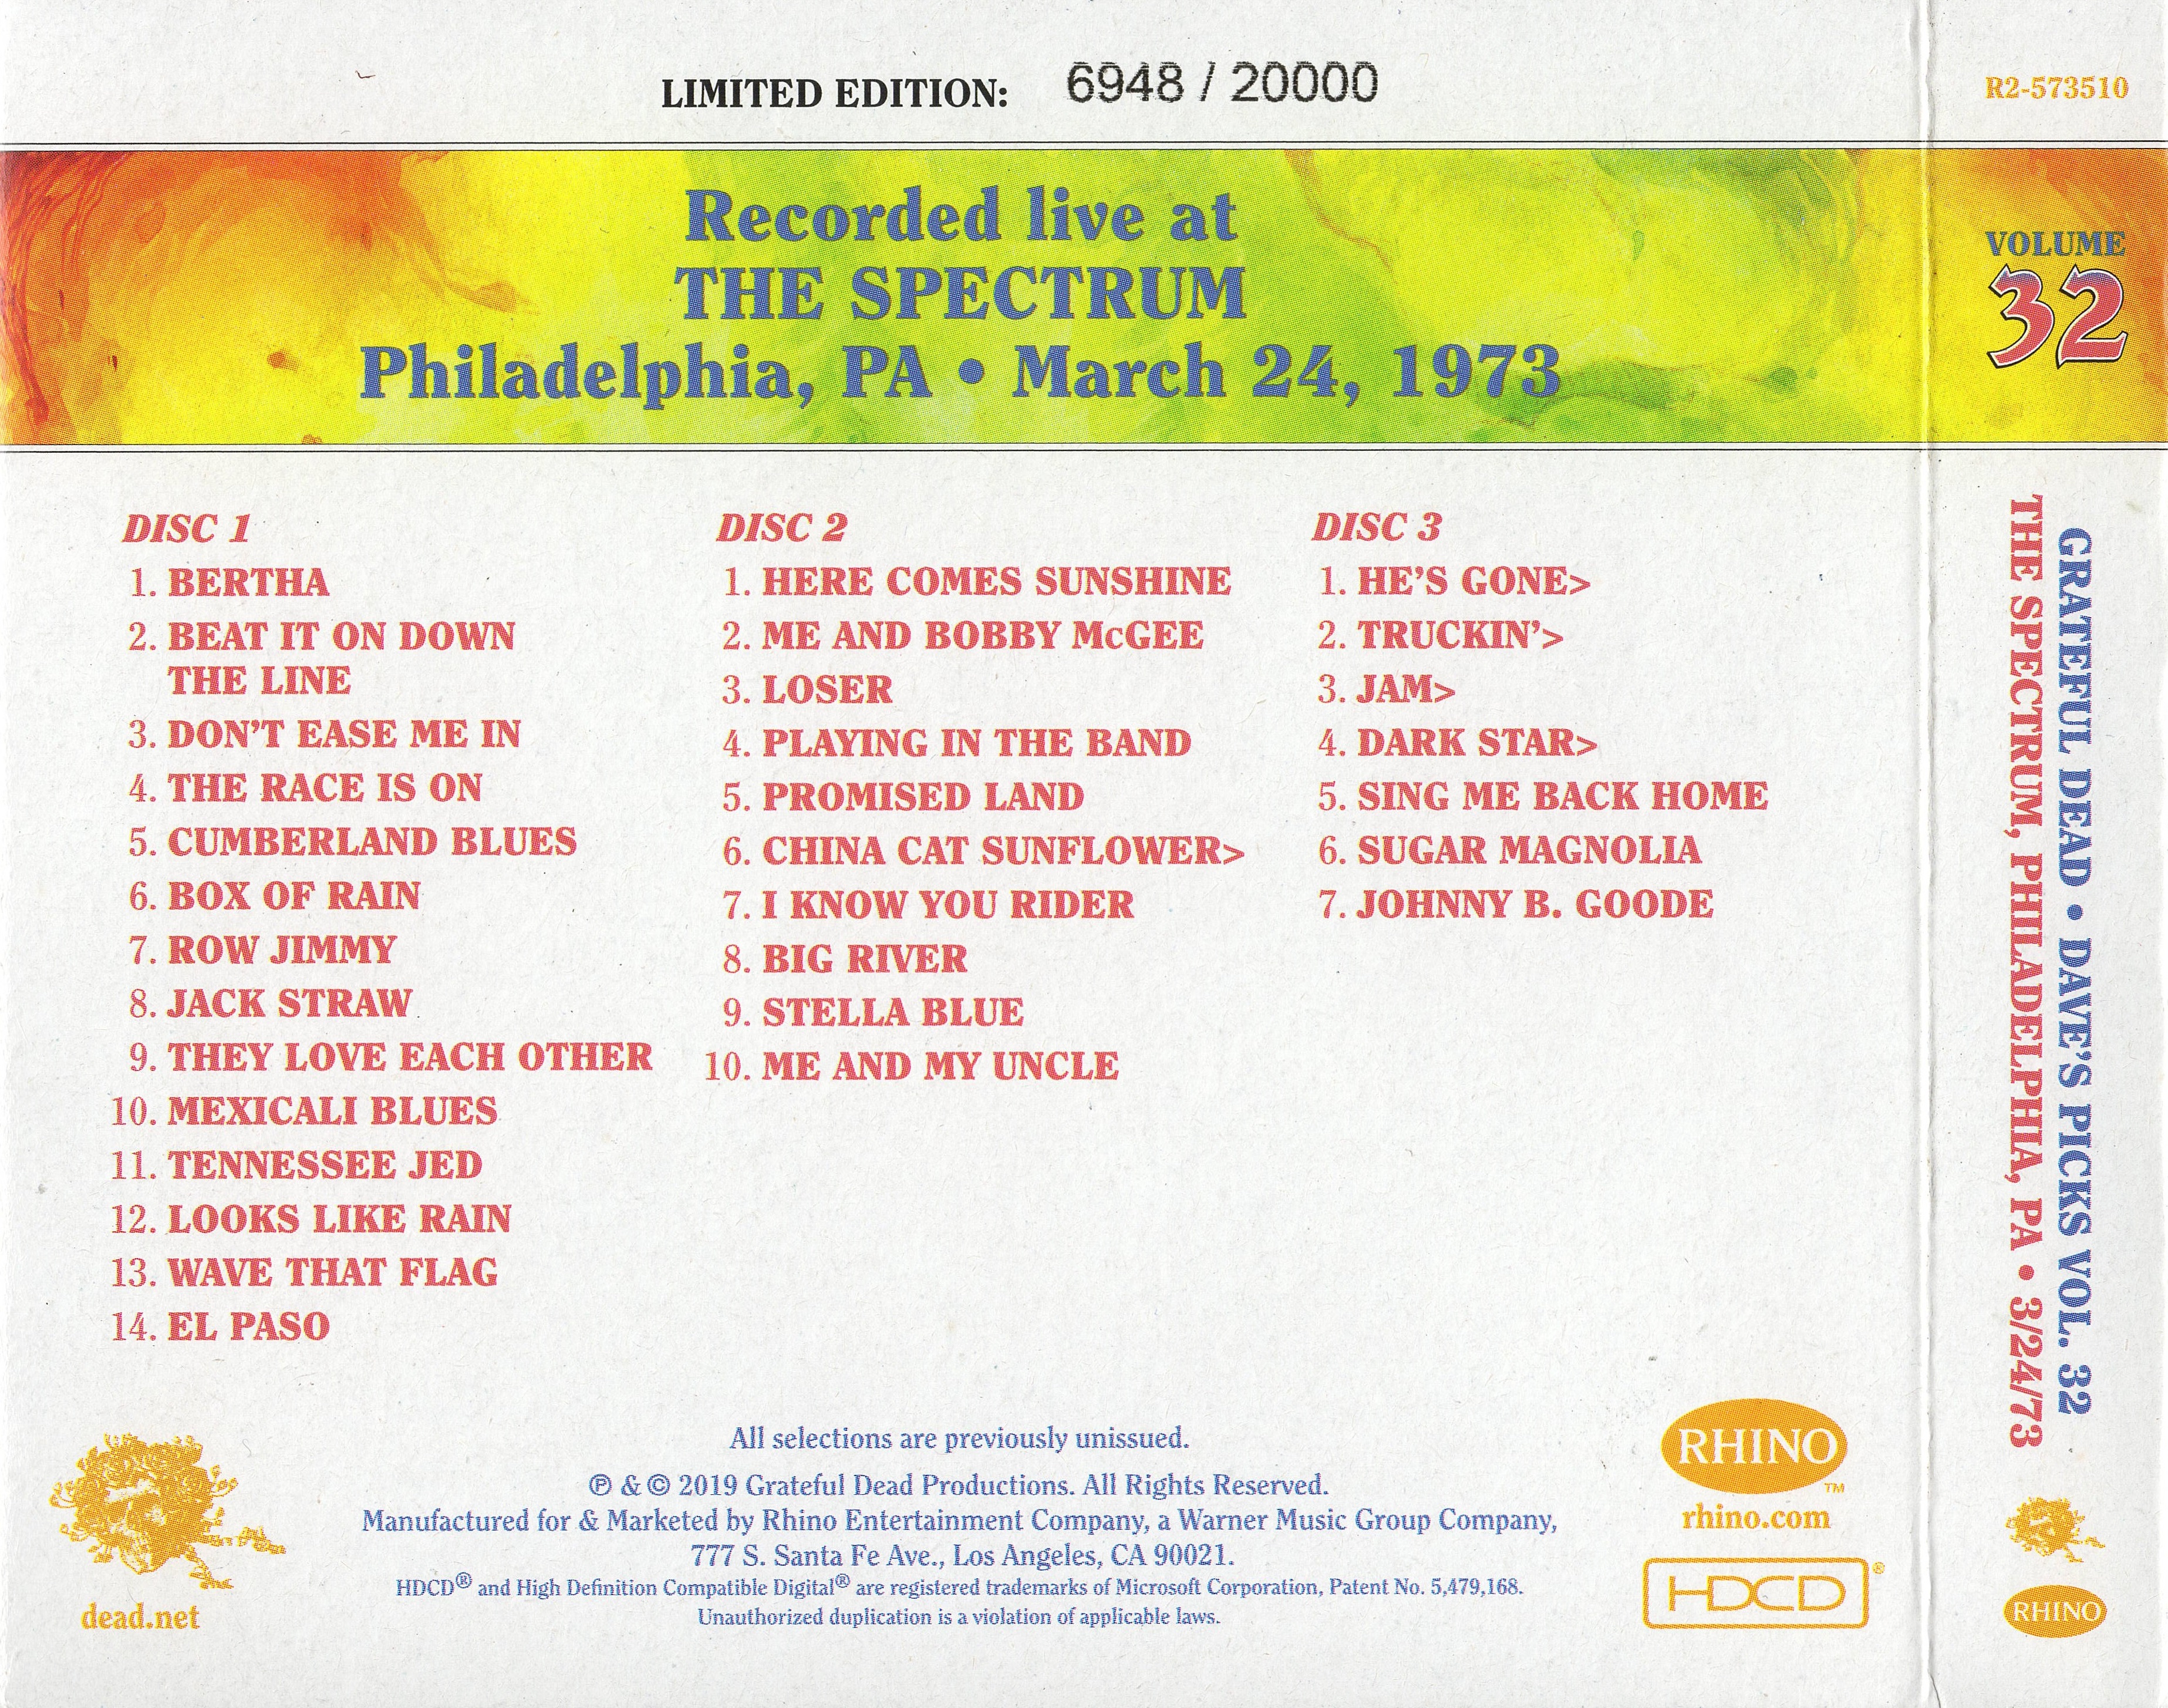 Release “Dave's Picks, Volume 32: The Spectrum, Philadelphia, PA 